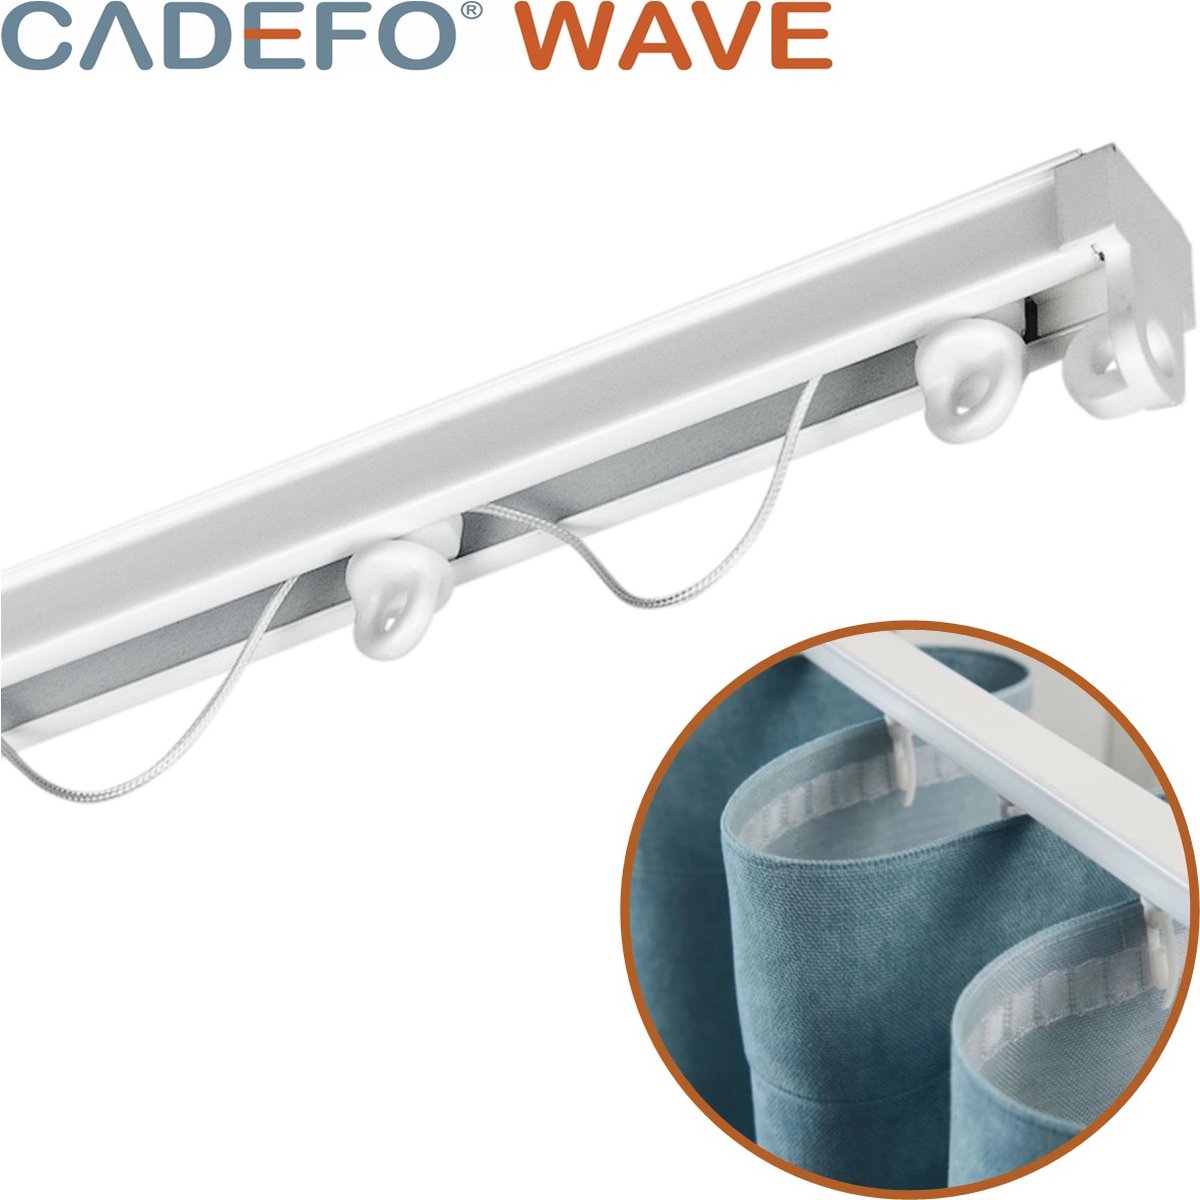 CADEFO WAVE (501 - 550 cm) Gordijnrails - Compleet op maat! - UIT 1 STUK - Leverbaar tot 6 meter - Plafondbevestiging - Lengte 514 cm